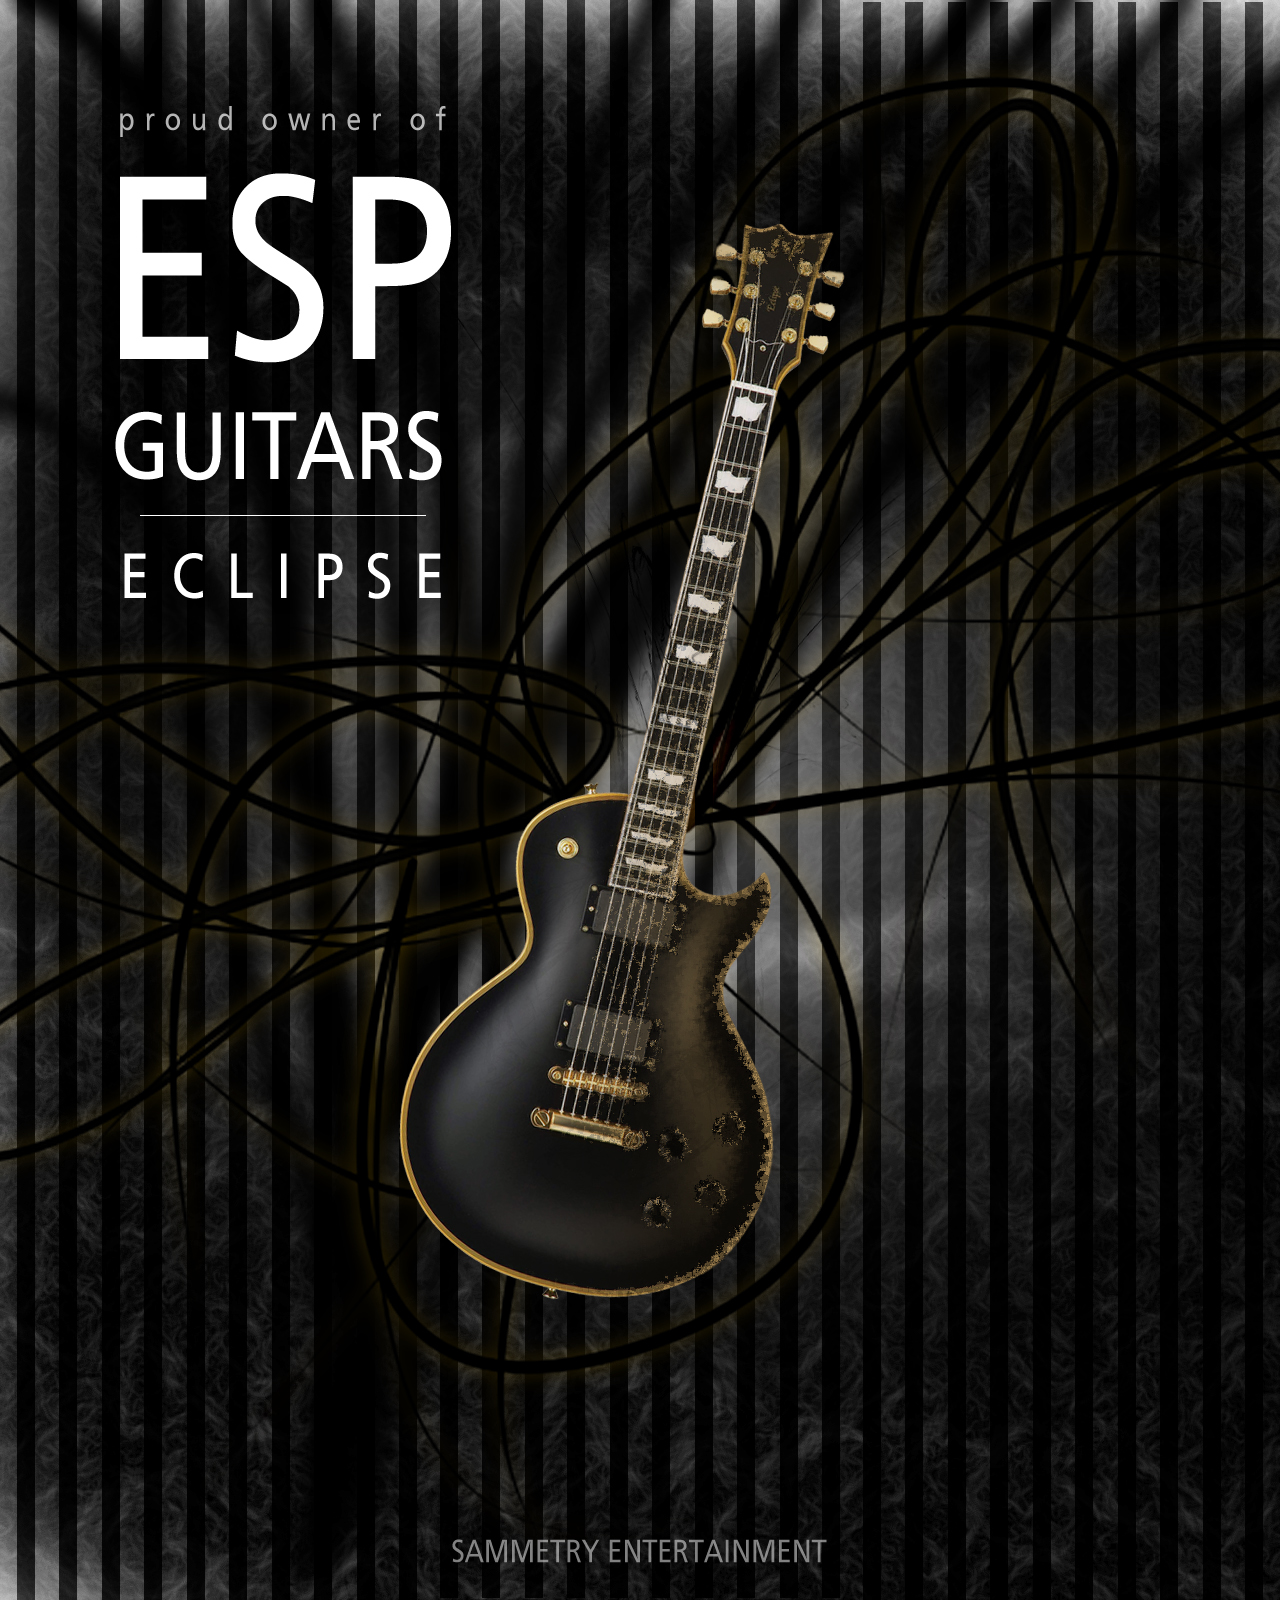 78 Esp Guitars Wallpaper On Wallpapersafari